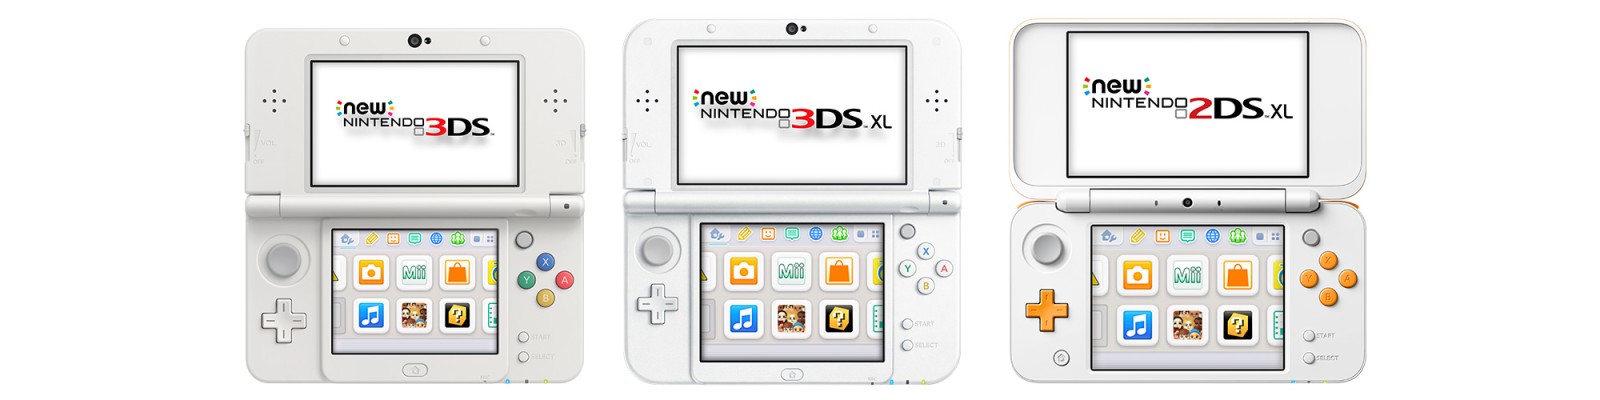 Klantenservice voor de New Nintendo 3DS-systemen